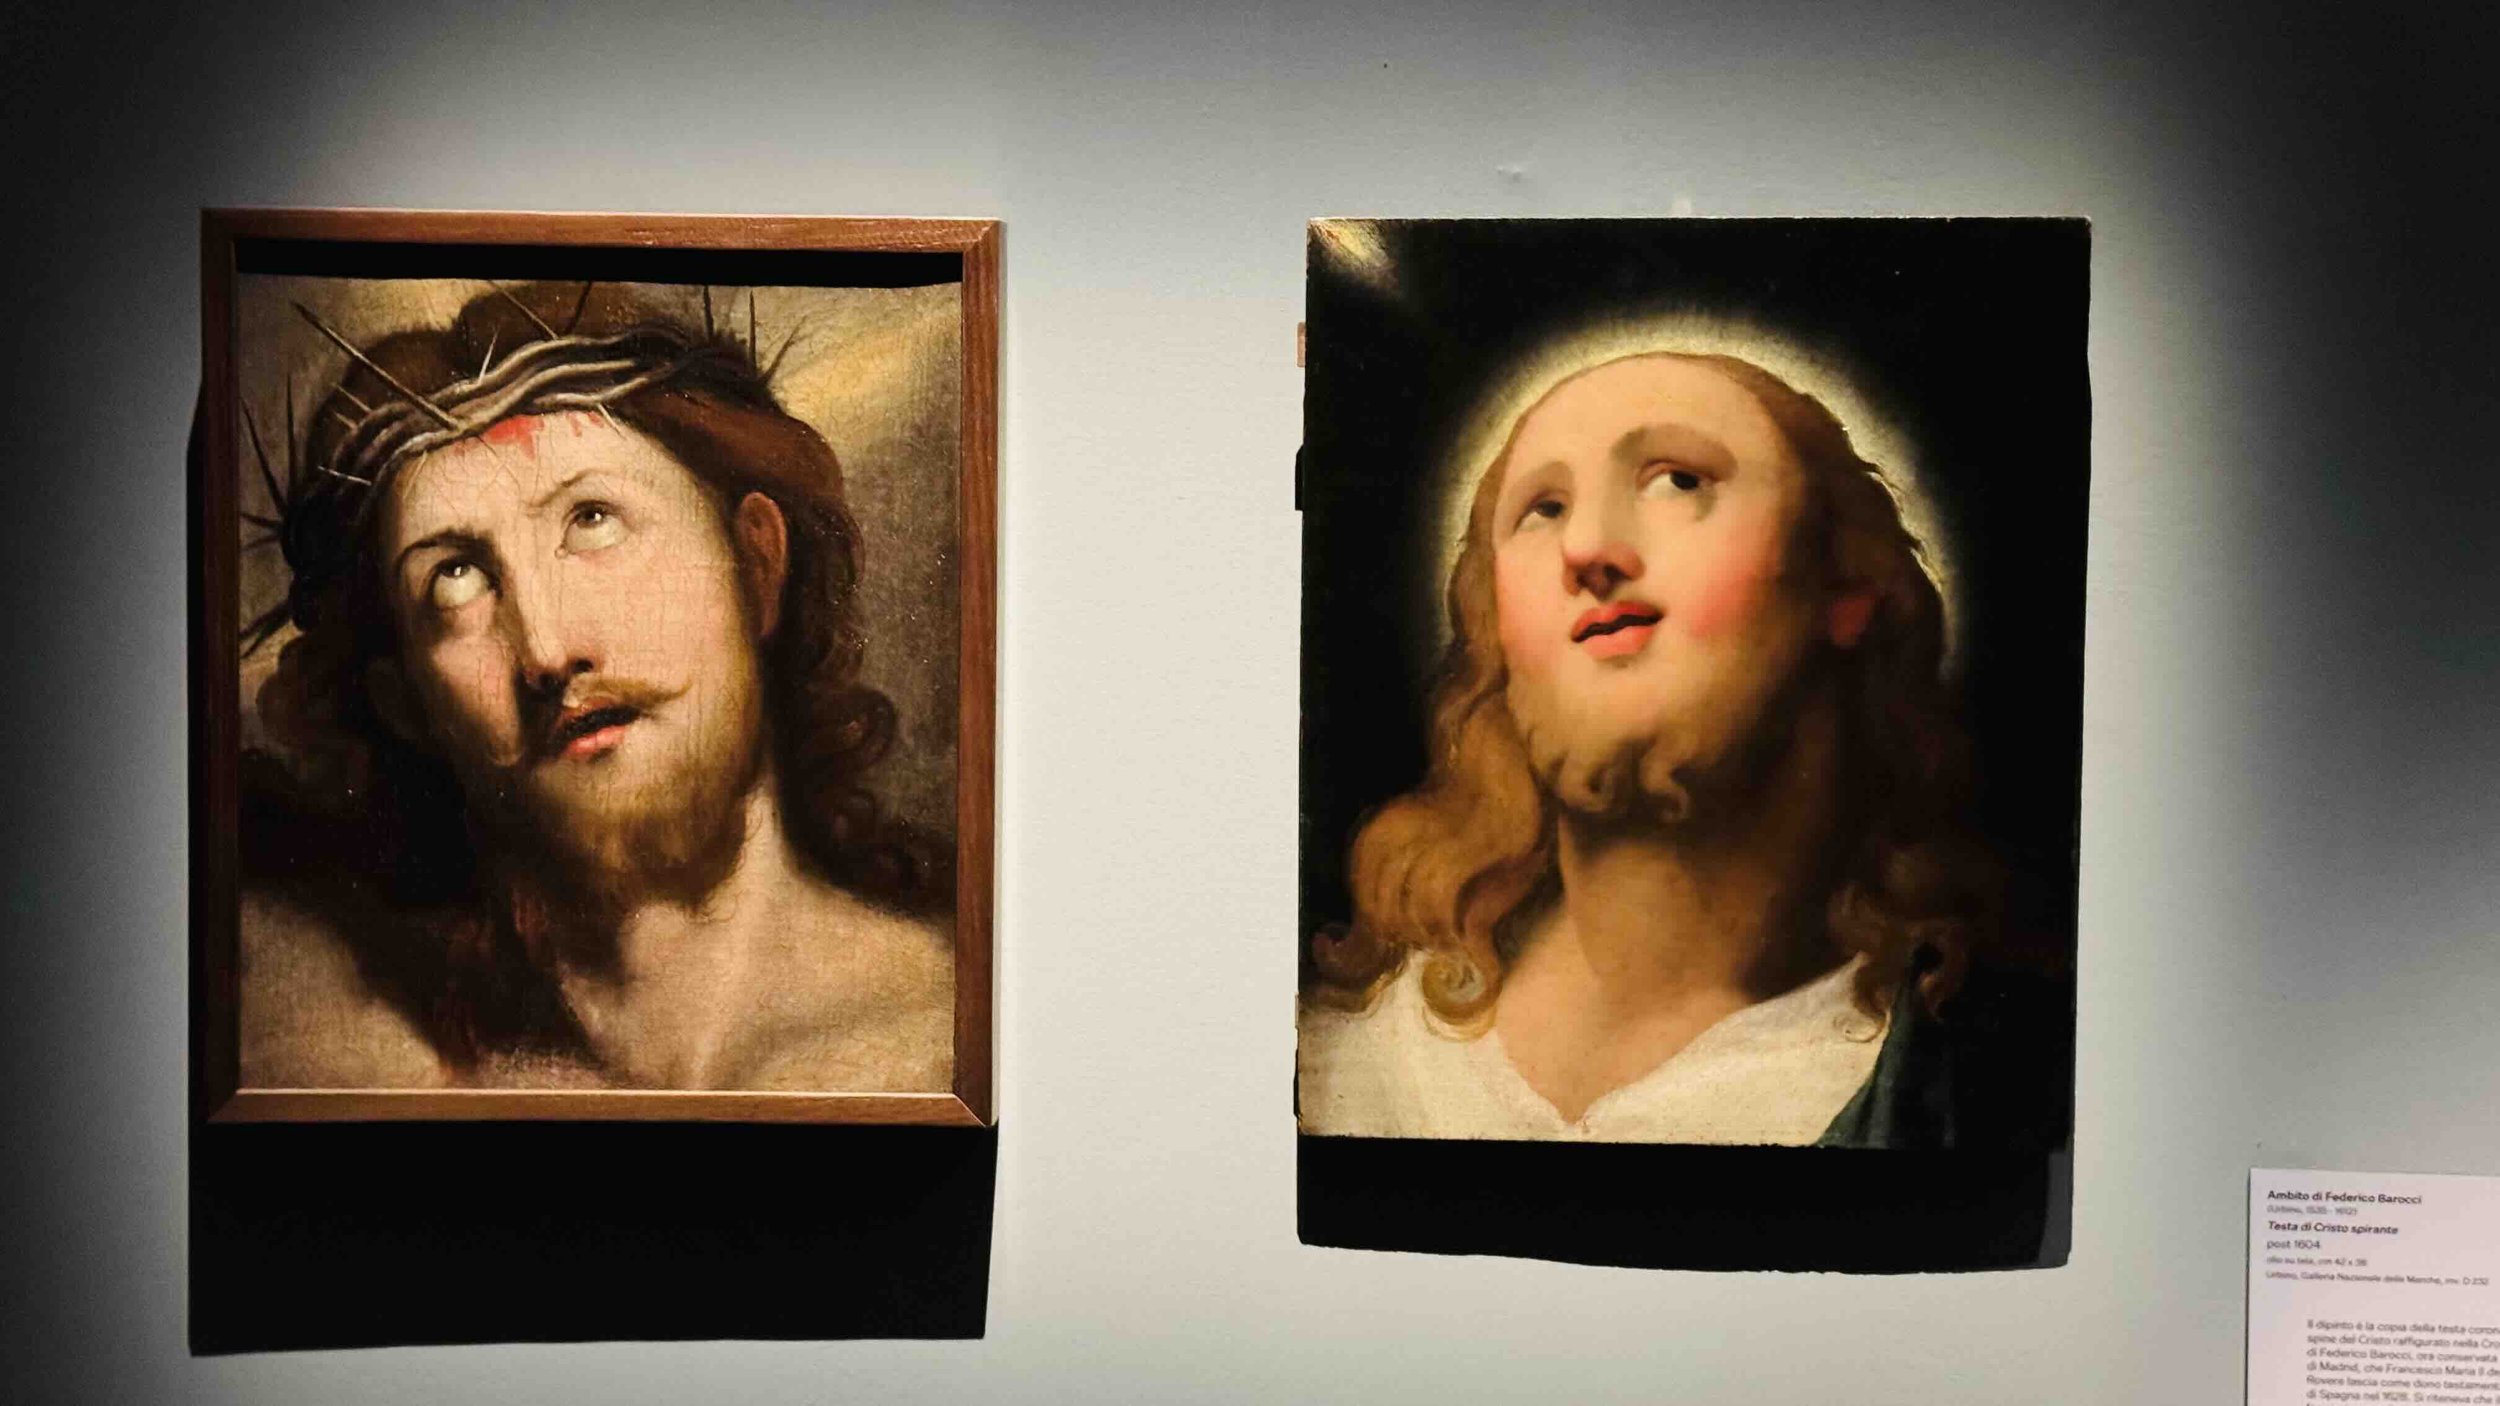 31 Ambito di Federico Barocci,Testa di Cristo spirante, 1604 e Anonimo da Antonio Allegri, detto Correggio,Testa di Cristo.jpeg